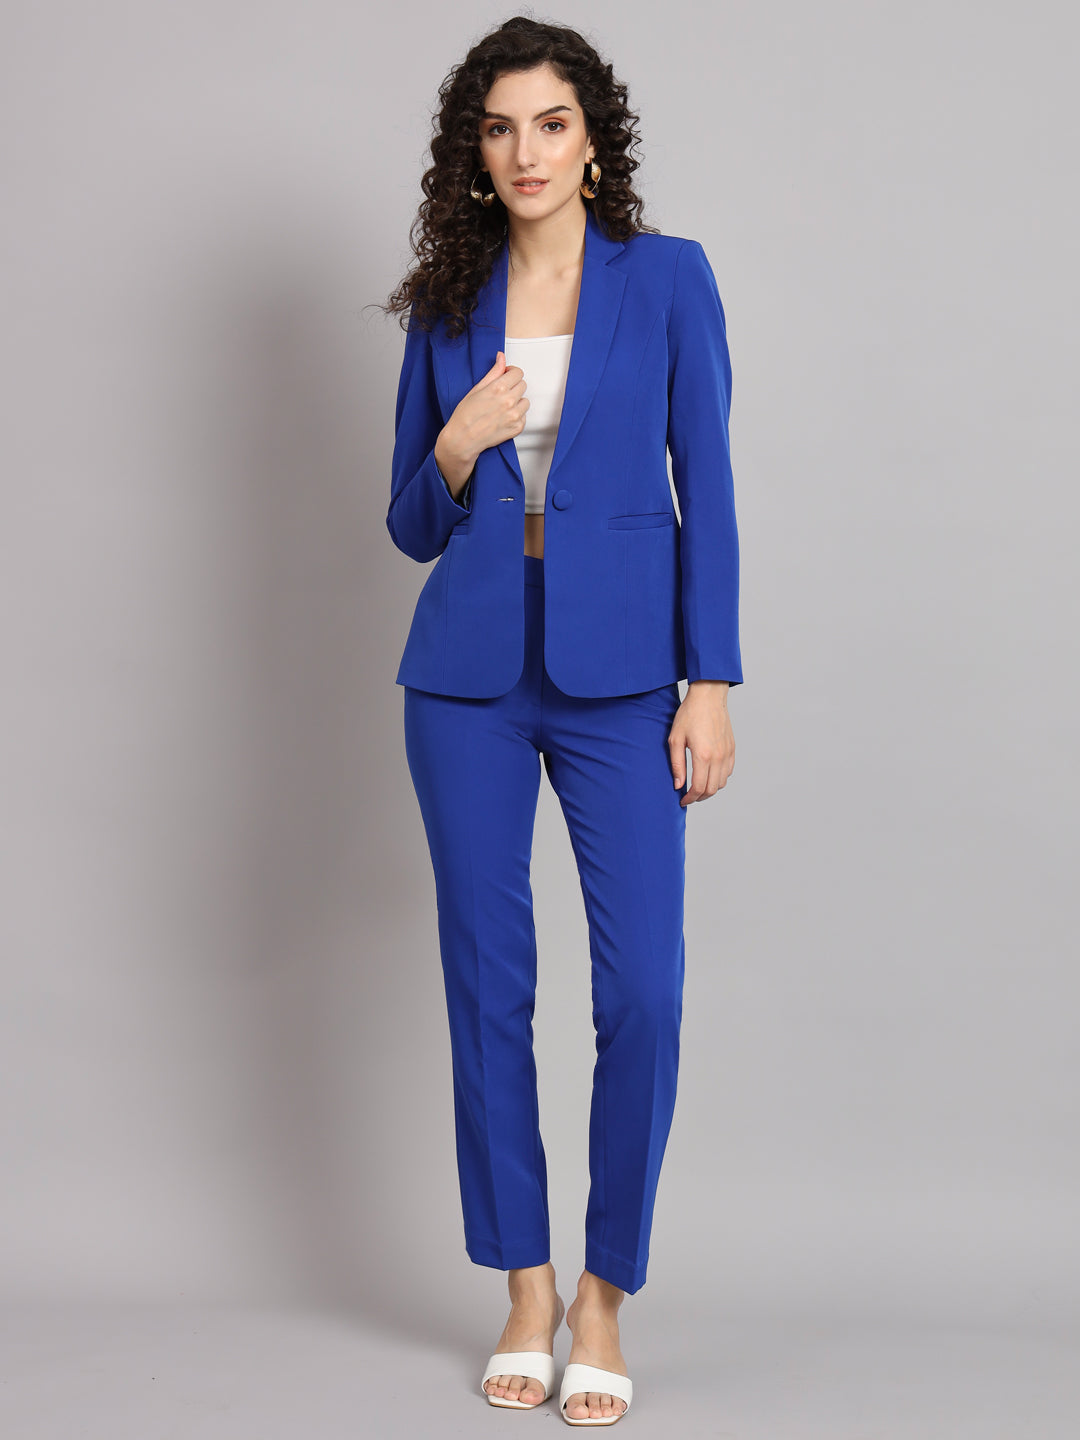 Buy Pink Pantsuit for Women, Dress Pant Suit, 2 Piece Deep V Blazer &  Trouser, Party Suit, Business Pant Suit, Coat, Wedding Pant Suit Online in  India